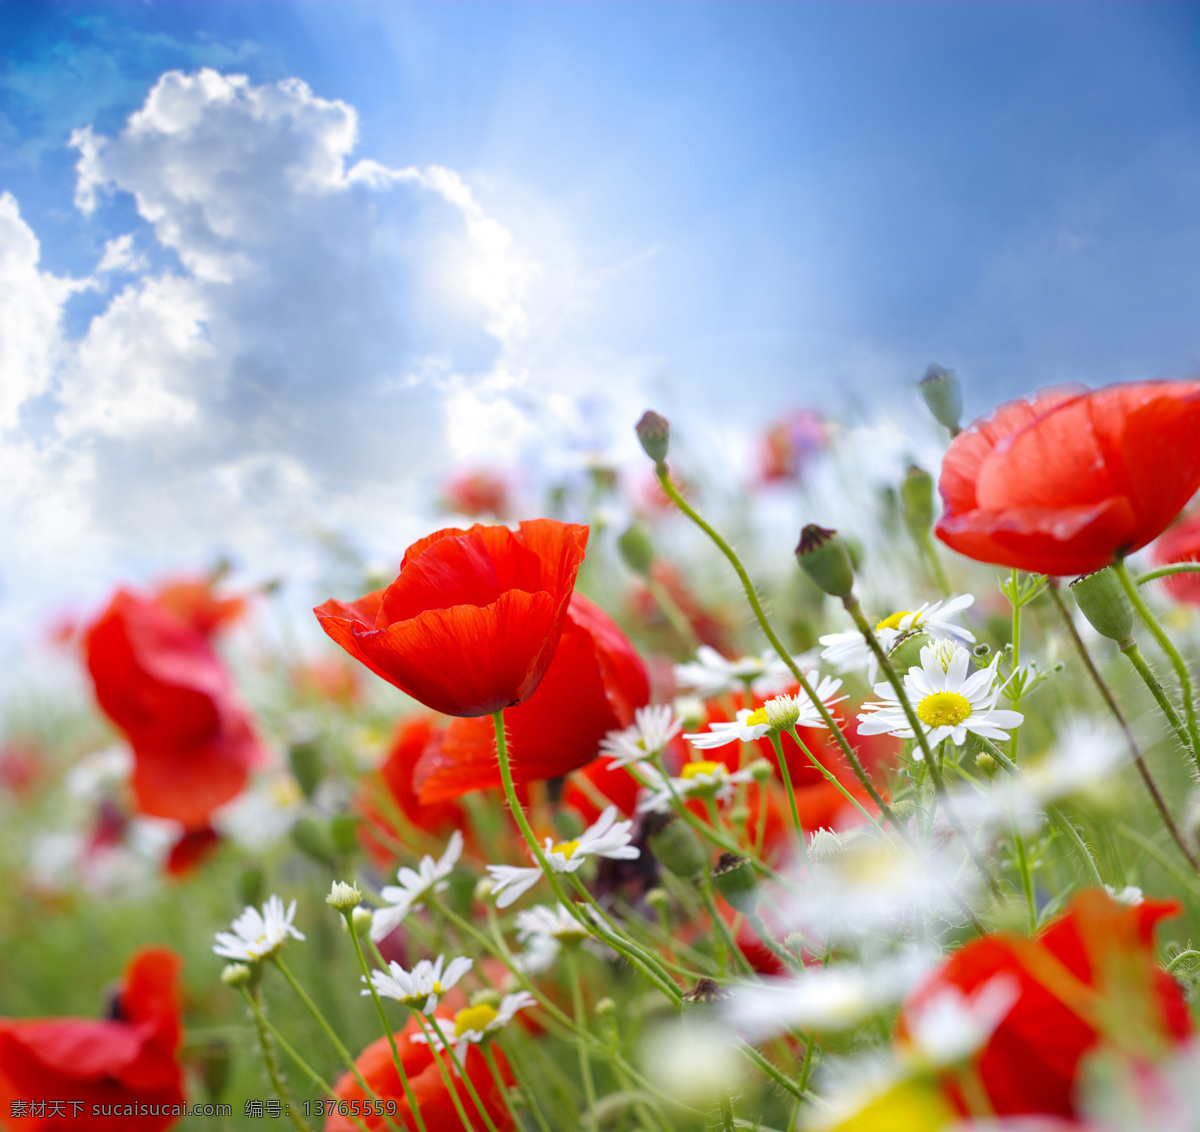 高清花朵摄影 天空 蓝天白云 太阳 罂粟 罂粟花 花朵 鲜花 鲜花摄影 花朵素材 叶子 绿叶 花束 自然 自然风光 自然风景 自然景观 红色